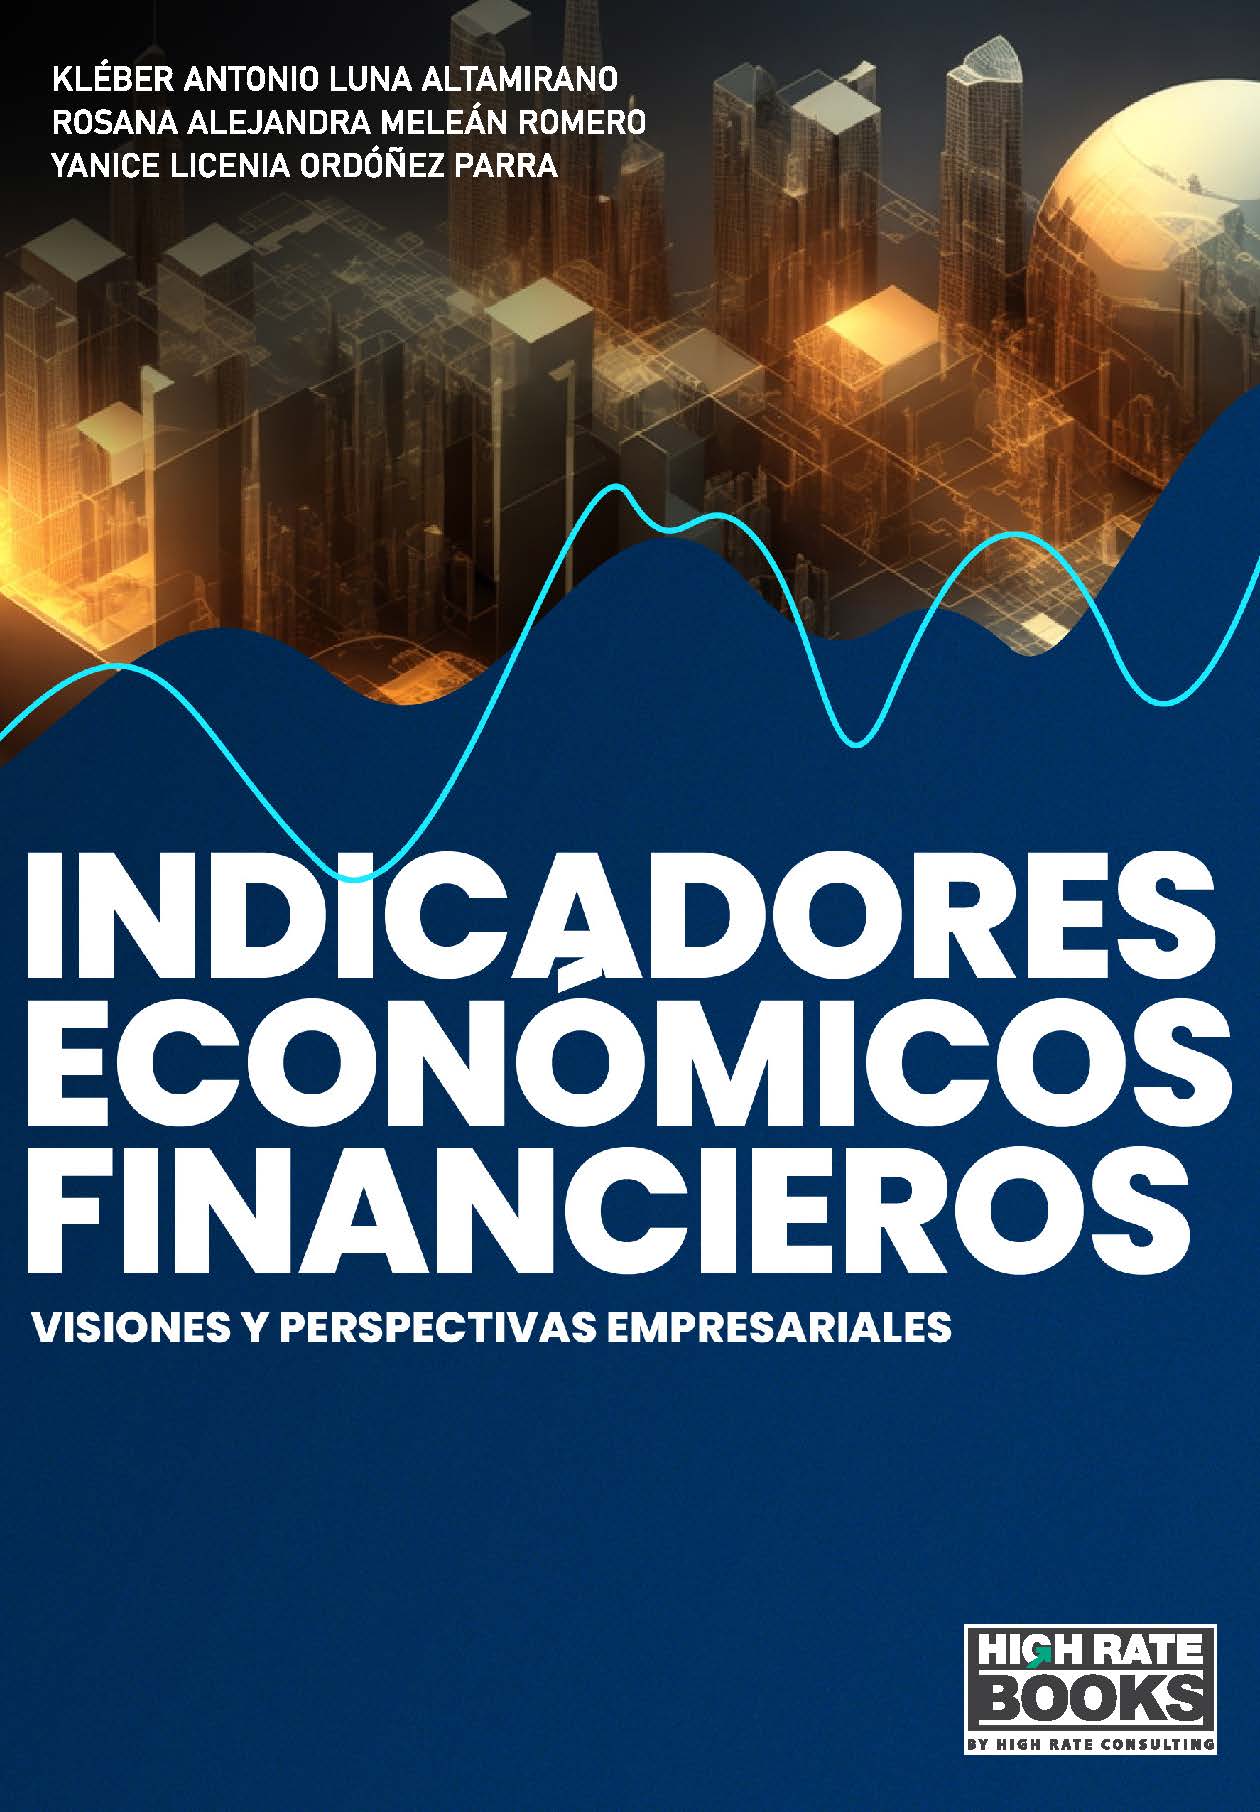 Imagen de portada del libro Indicadores económicos financieros. Visiones y perspectivas empresariales